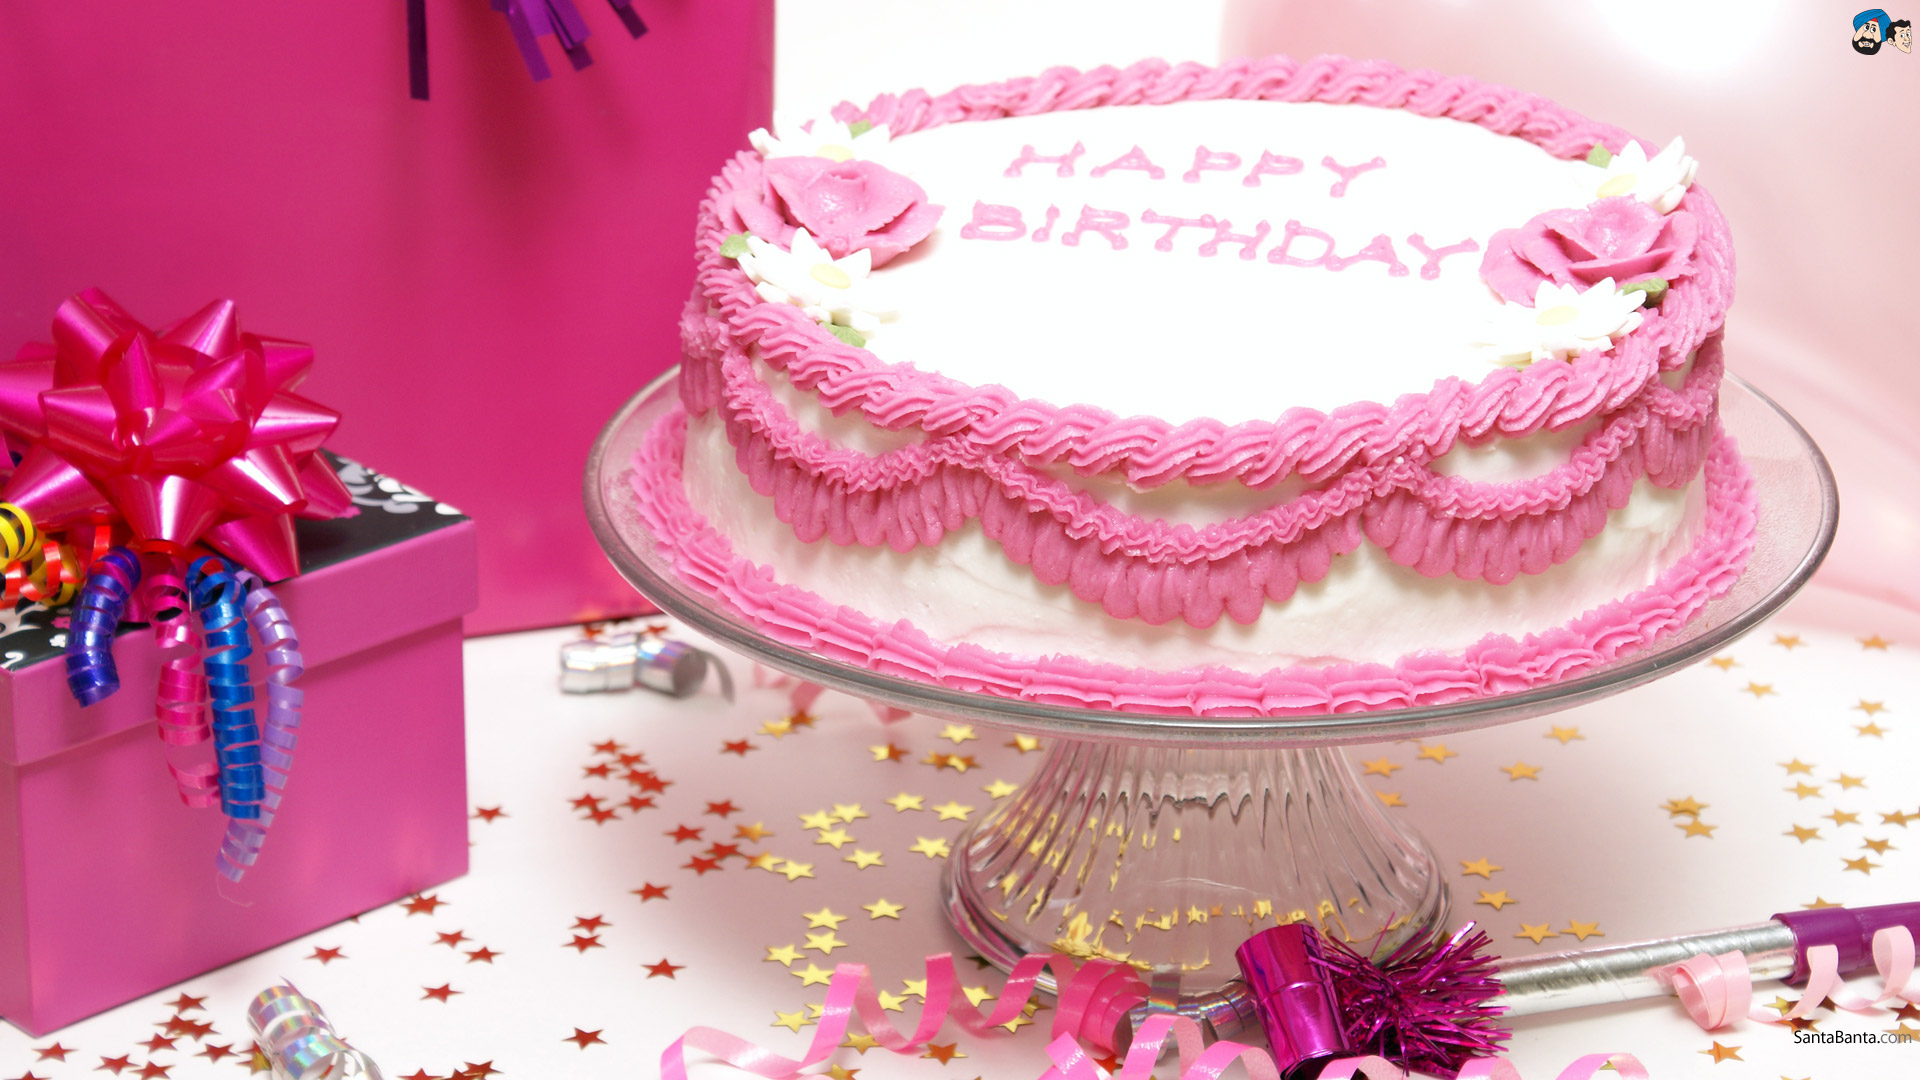 マドゥ名壁紙,ケーキ,ピンク,砂糖ペースト,バタークリーム,誕生日ケーキ